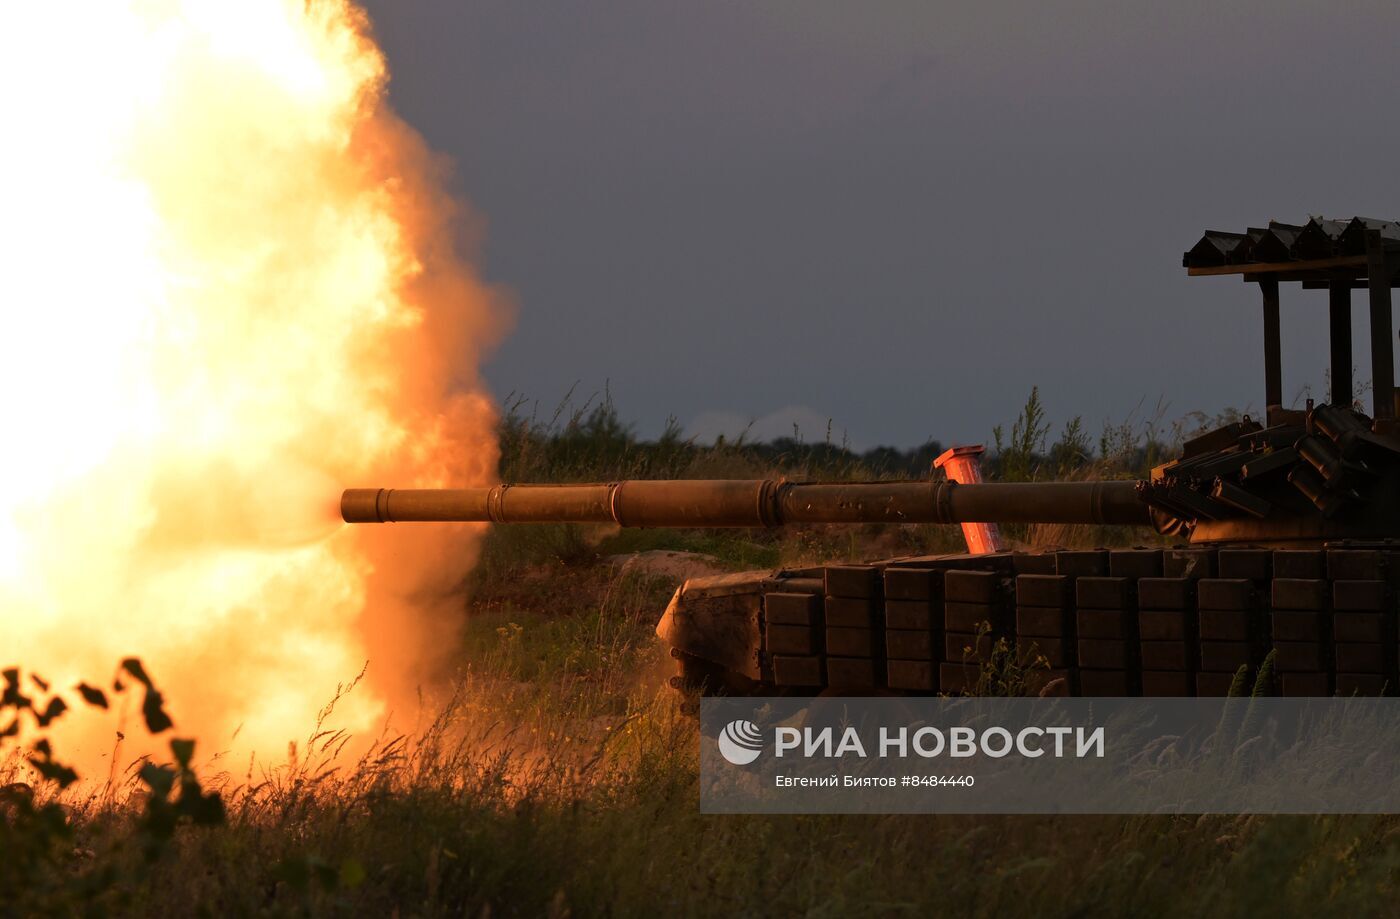 الدفاع الروسية تعلن القضاء على مئات العسكريين الأوكرانيين وتدمير مستودعات ذخيرة وإسقاط 25 مسيرة